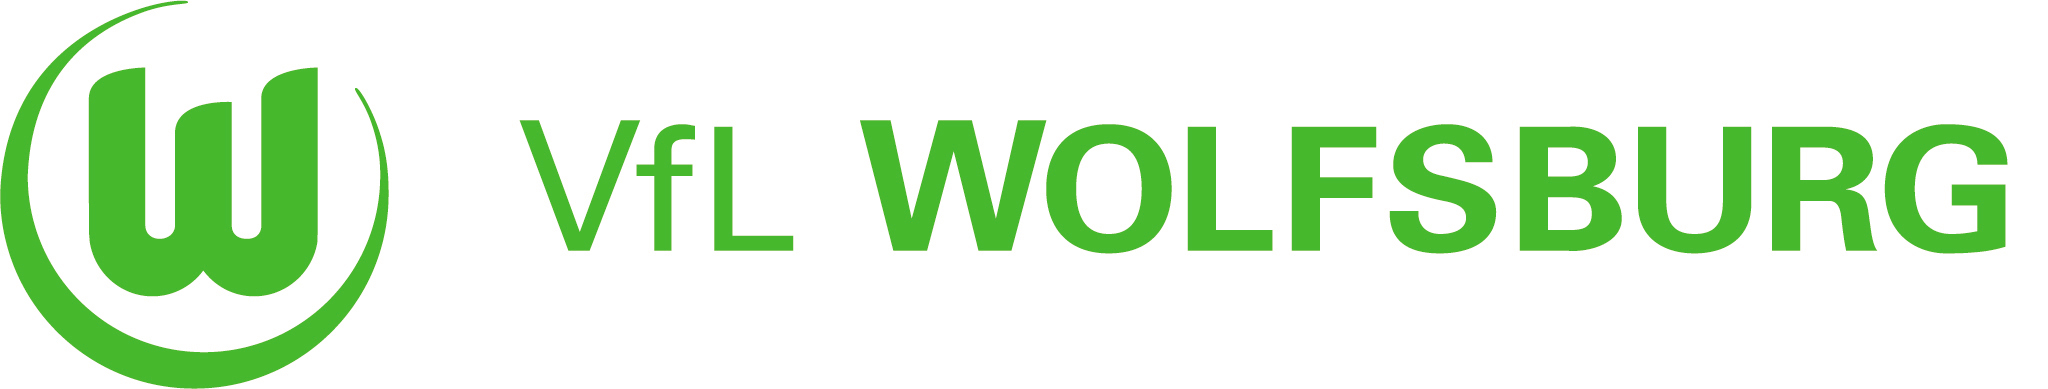 Vfl Wolfsburg-Fußball Gmbh